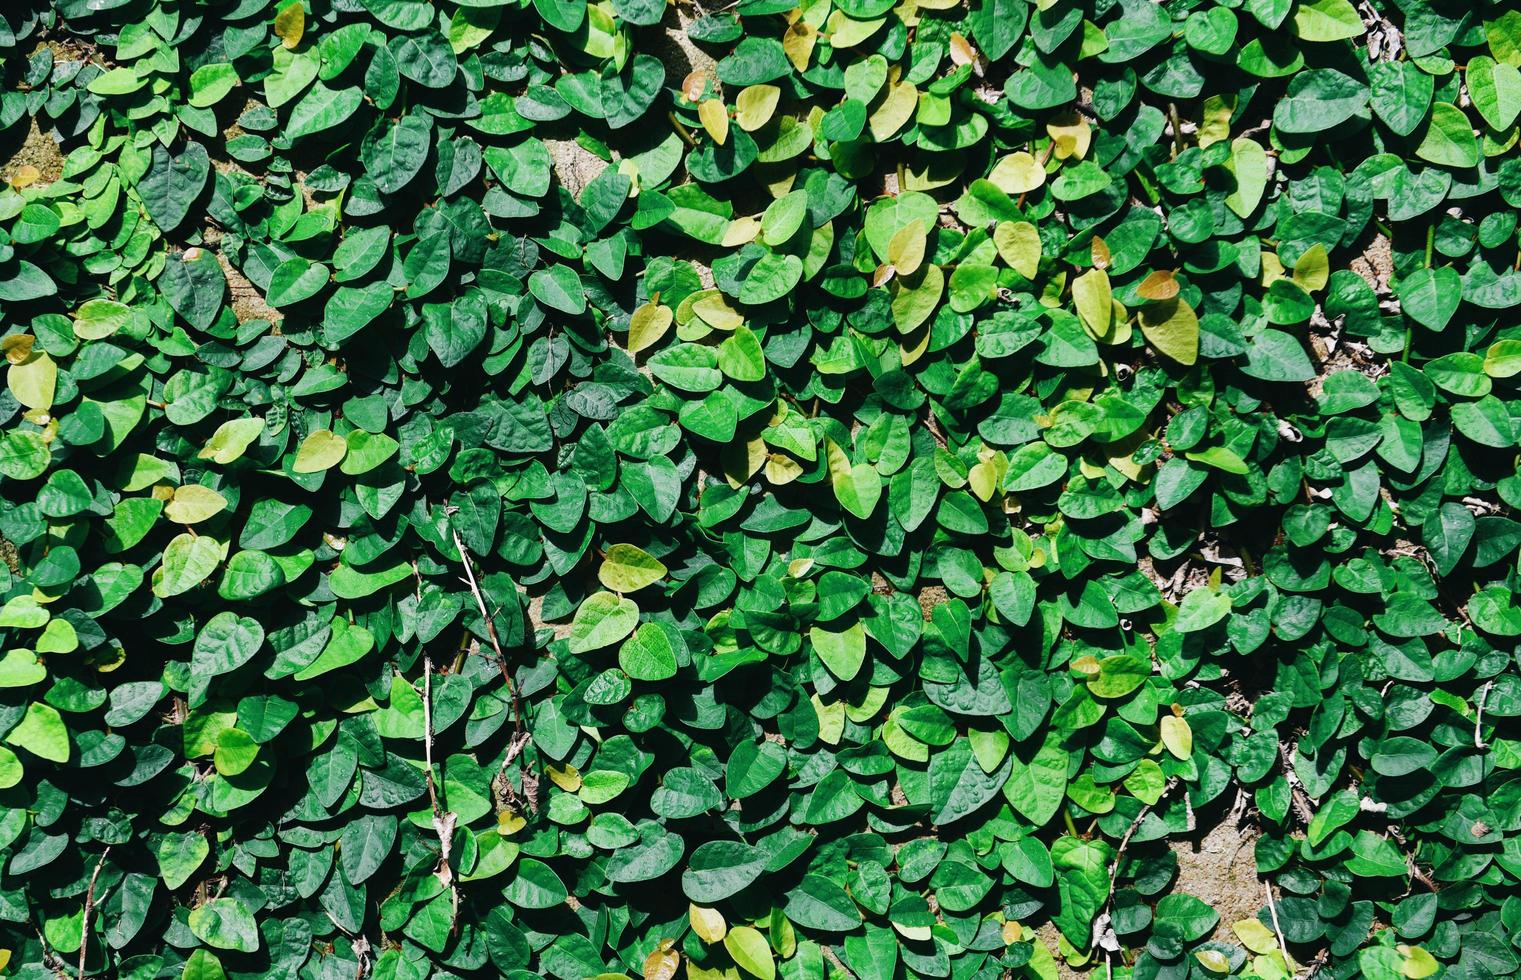 texture beau fond vert naturel , vue de dessus - fond de plante feuille verte peu poussant sur le sol ou le mur photo